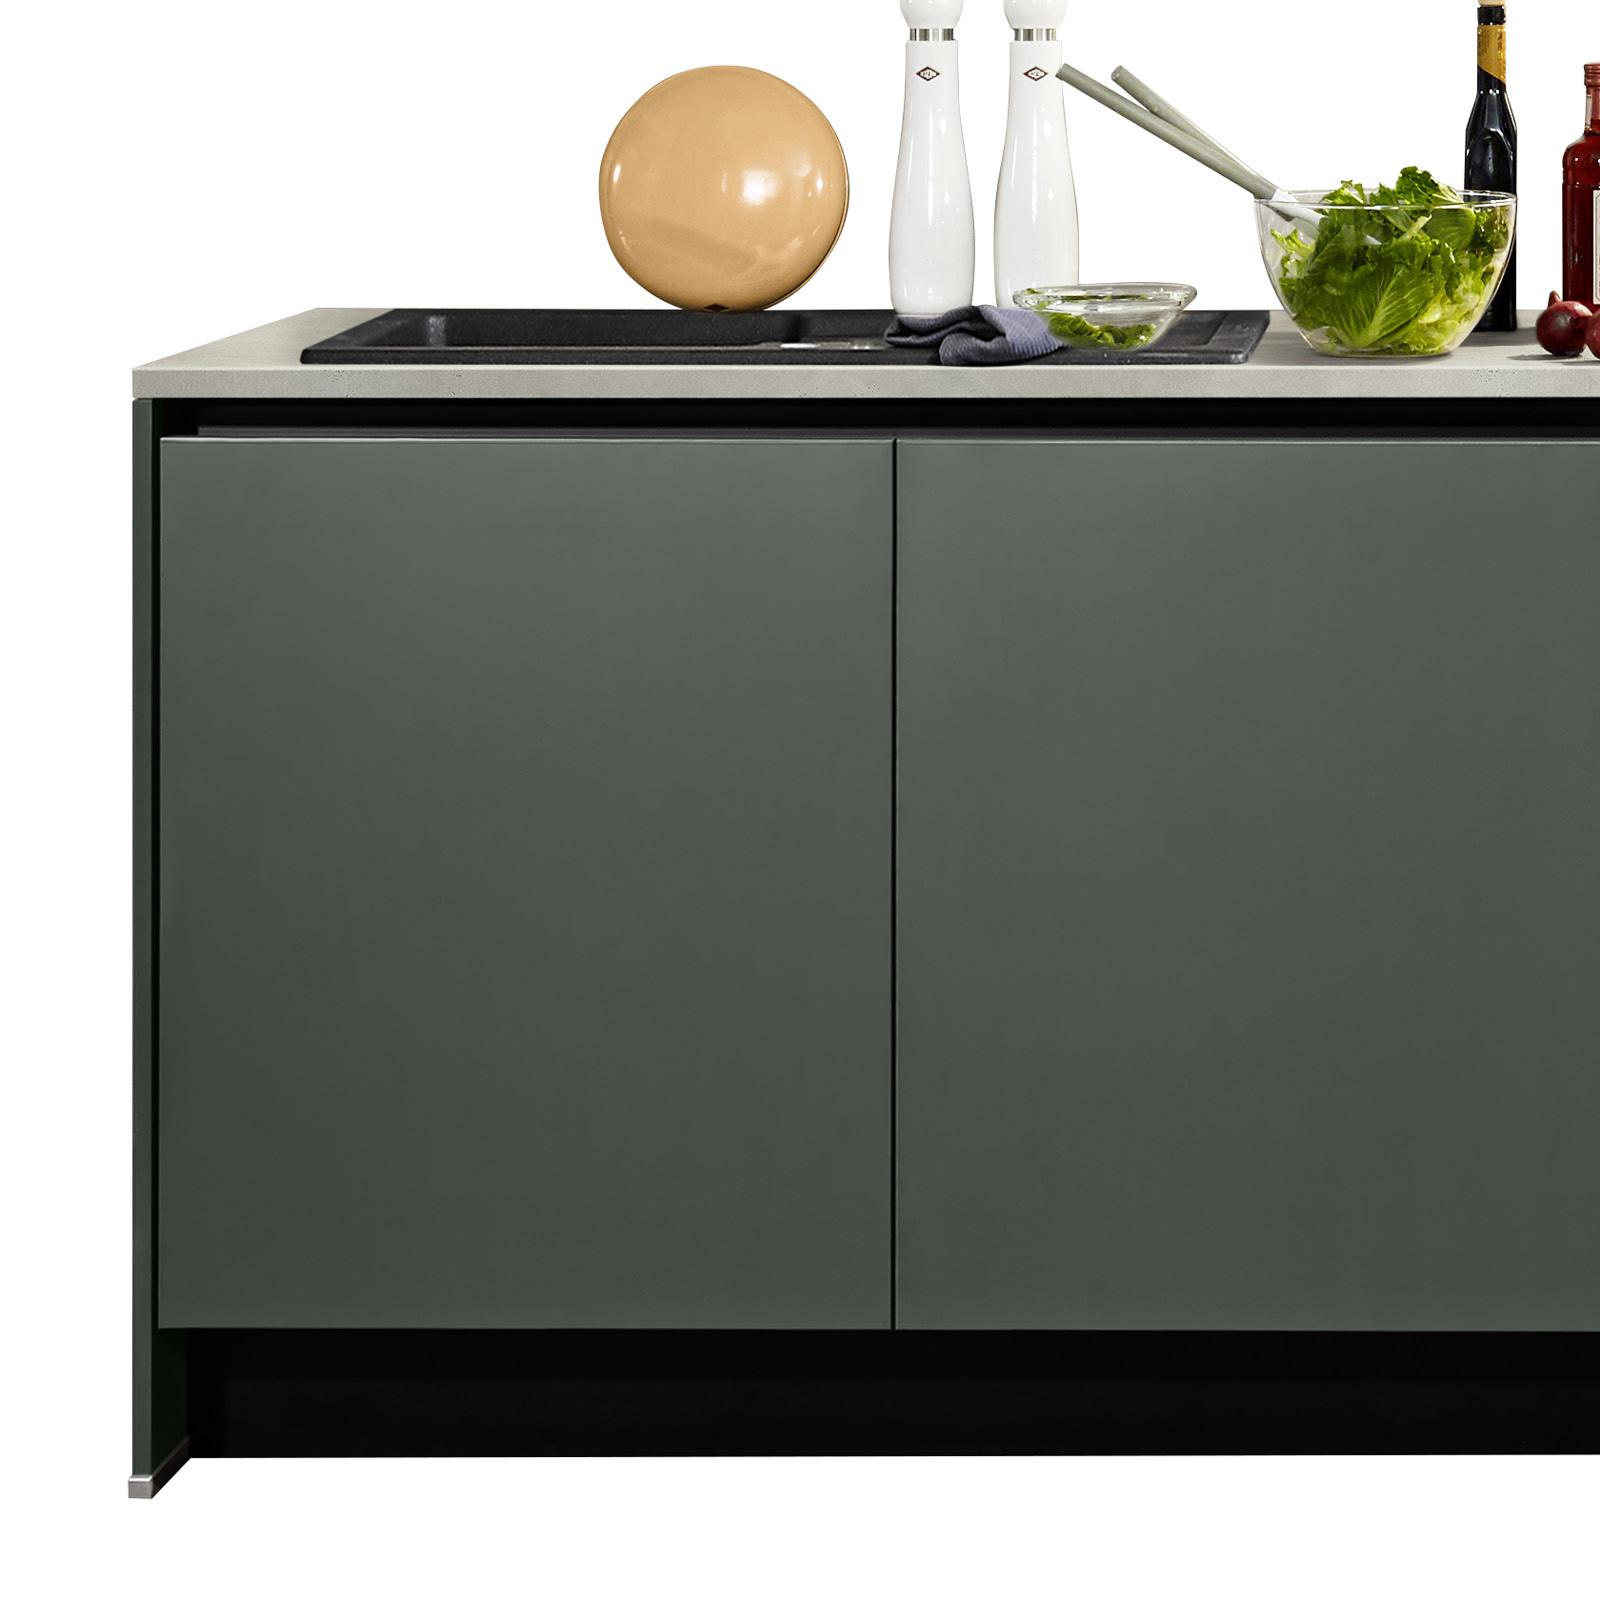 Küchenzeile Win ohne Geräte 268 cm Dunkelgrün - Basics, Holzwerkstoff (268cm)